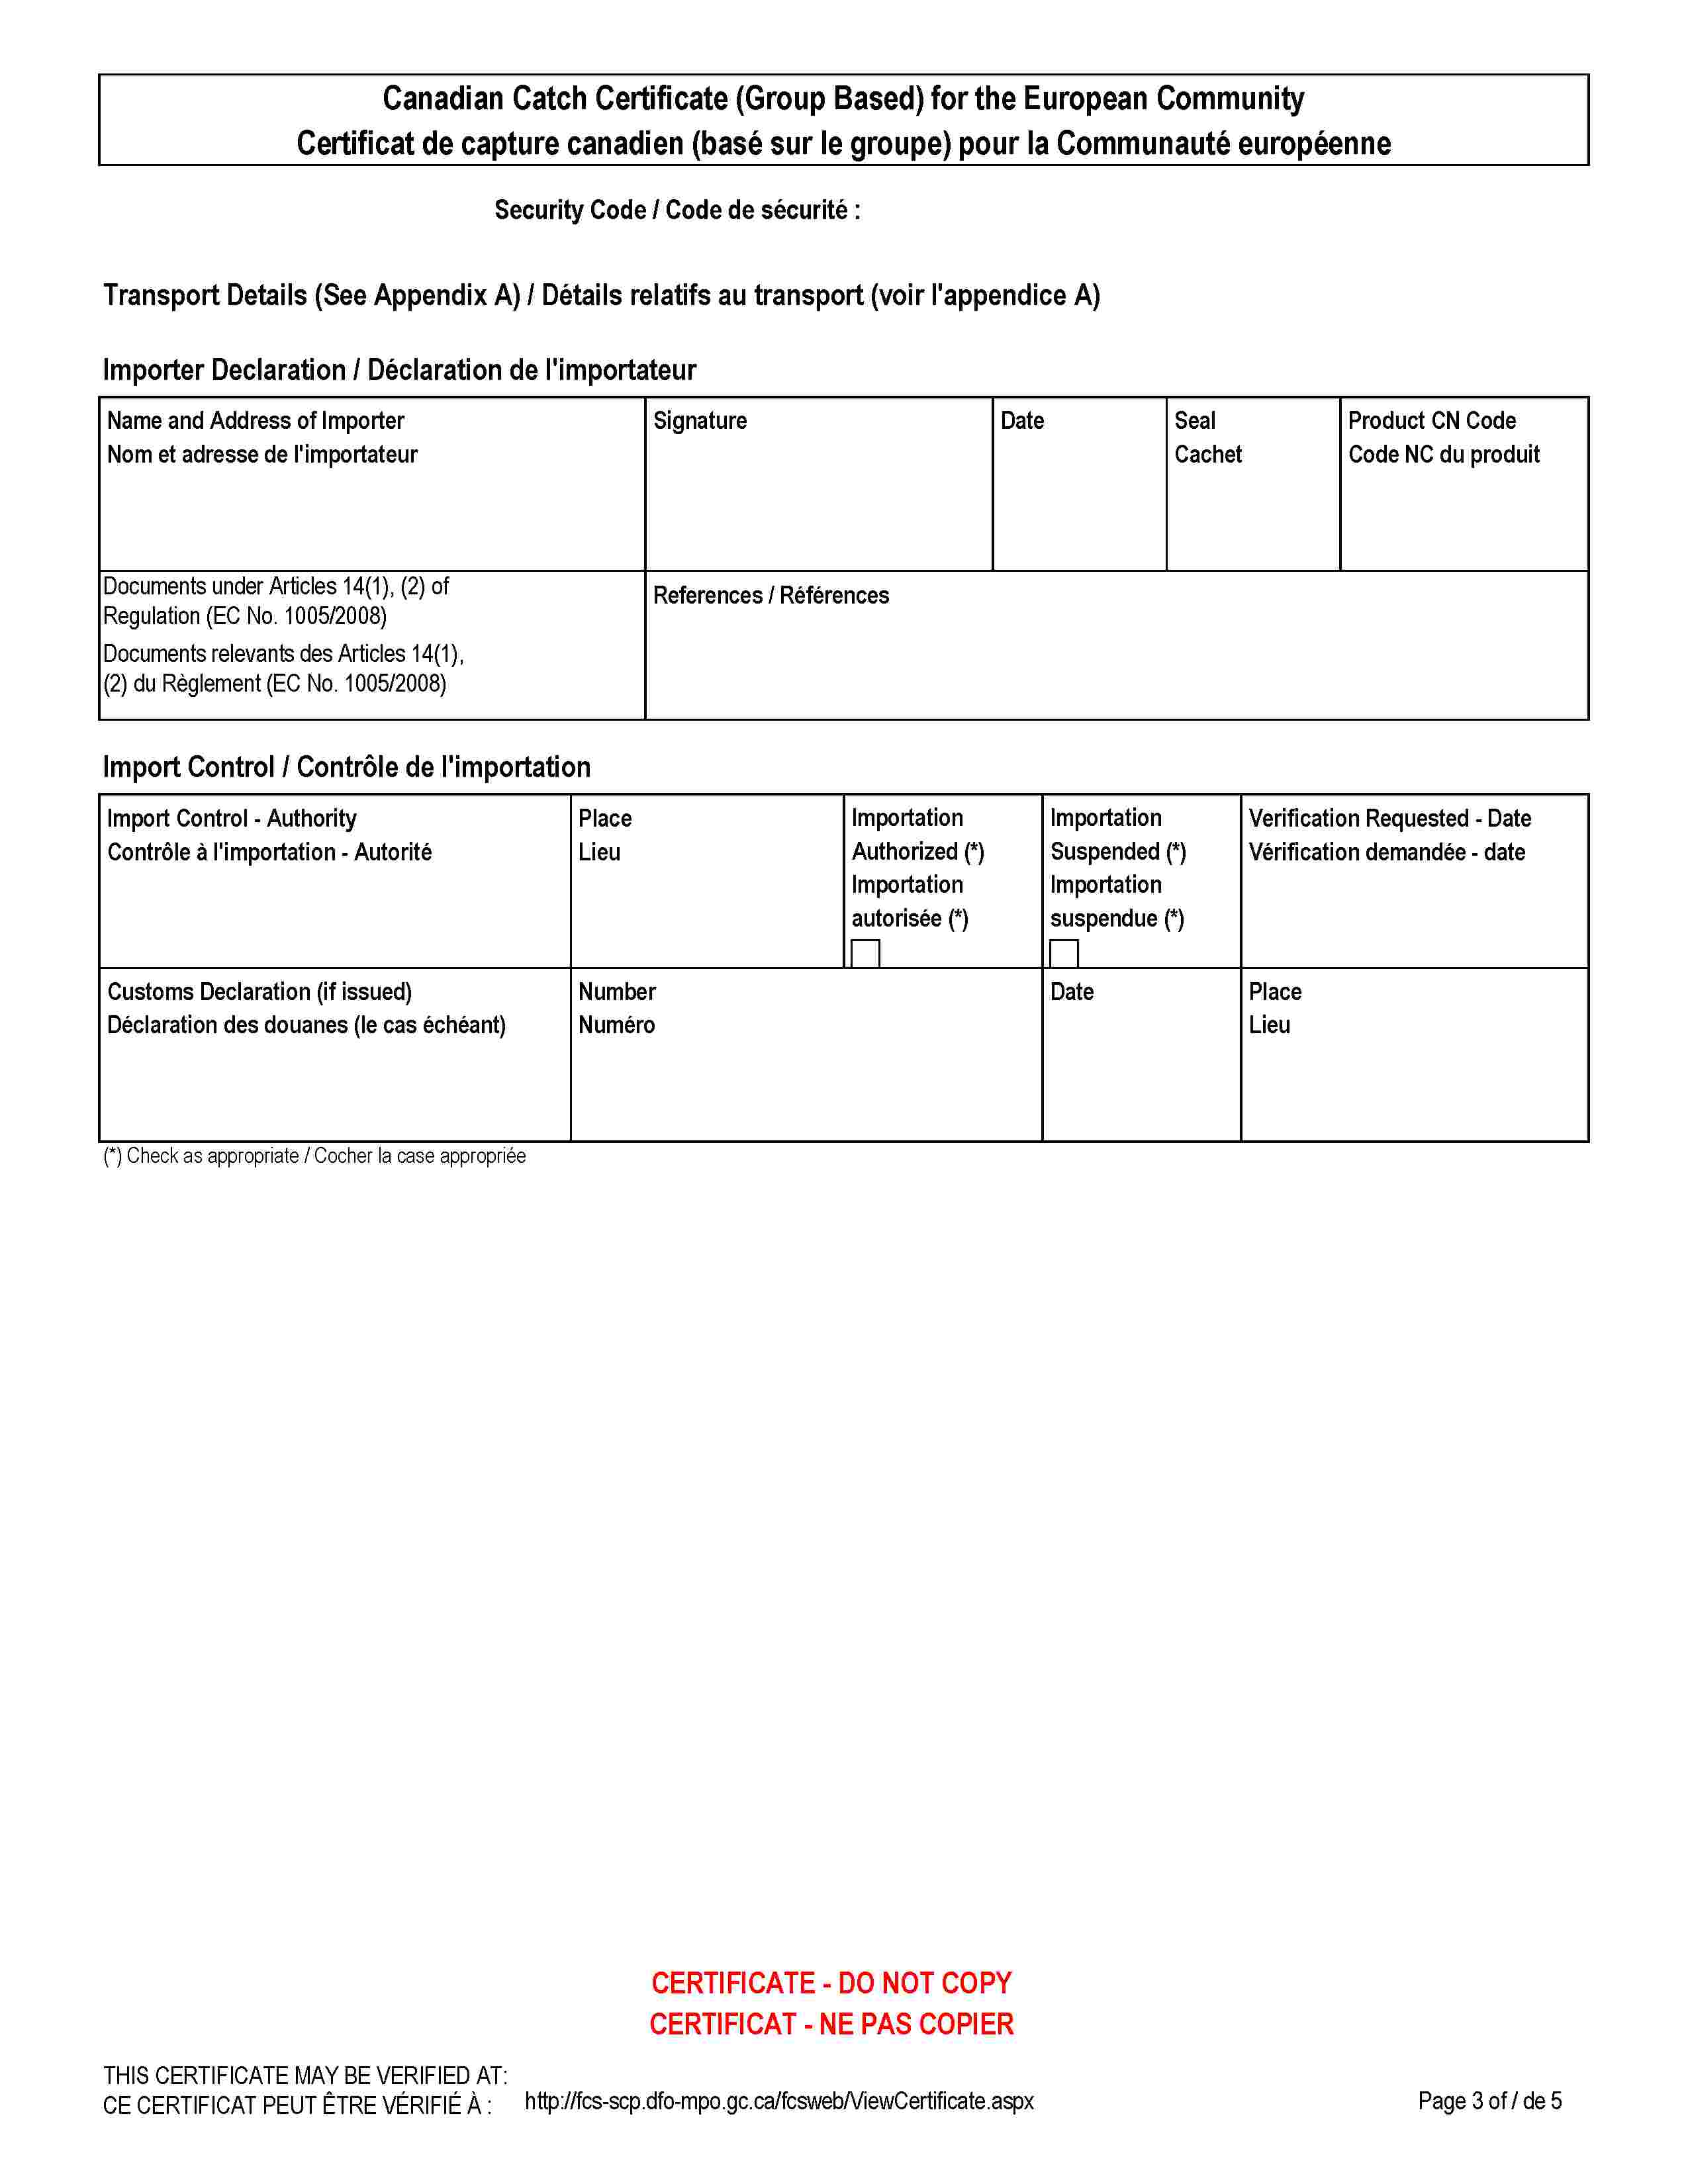 Canadian Catch Certificate (Group Based) for the European CommunityCertificat de capture canadien (basé sur le groupe) pour la Communauté européenneSecurity Code / Code de sécurité :Transport Details (See Appendix A) / Détails relatifs au transport (voir l'appendice A)Importer Declaration / Déclaration de l'importateurName and Address of ImporterNom et adresse de l'importateurSignatureDateSealCachetProduct CN CodeCode NC du produitDocuments under Articles 14(1), (2) of Regulation (EC No. 1005/2008)Documents relevants des Articles 14(1), (2) du Règlement (EC No. 1005/2008)References / RéférencesImport Control / Contrôle de l'importationImport Control - AuthorityContrôle à l'importation - AutoritéPlaceLieuImportation Authorized (*)Importation autorisée (*)Importation Suspended (*)Importation suspendue (*)Verification Requested - DateVérification demandée - dateCustoms Declaration (if issued)Déclaration des douanes (le cas échéant)NumberNuméroDatePlaceLieu(*) Check as appropriate / Cocher la case appropriéeCERTIFICATE - DO NOT COPYCERTIFICAT - NE PAS COPIERTHIS CERTIFICATE MAY BE VERIFIED AT:CE CERTIFICAT PEUT ÊTRE VÉRIFIÉ À :http://fcs-scp.dfo-mpo.gc.ca/fcsweb/ViewCertificate.aspx